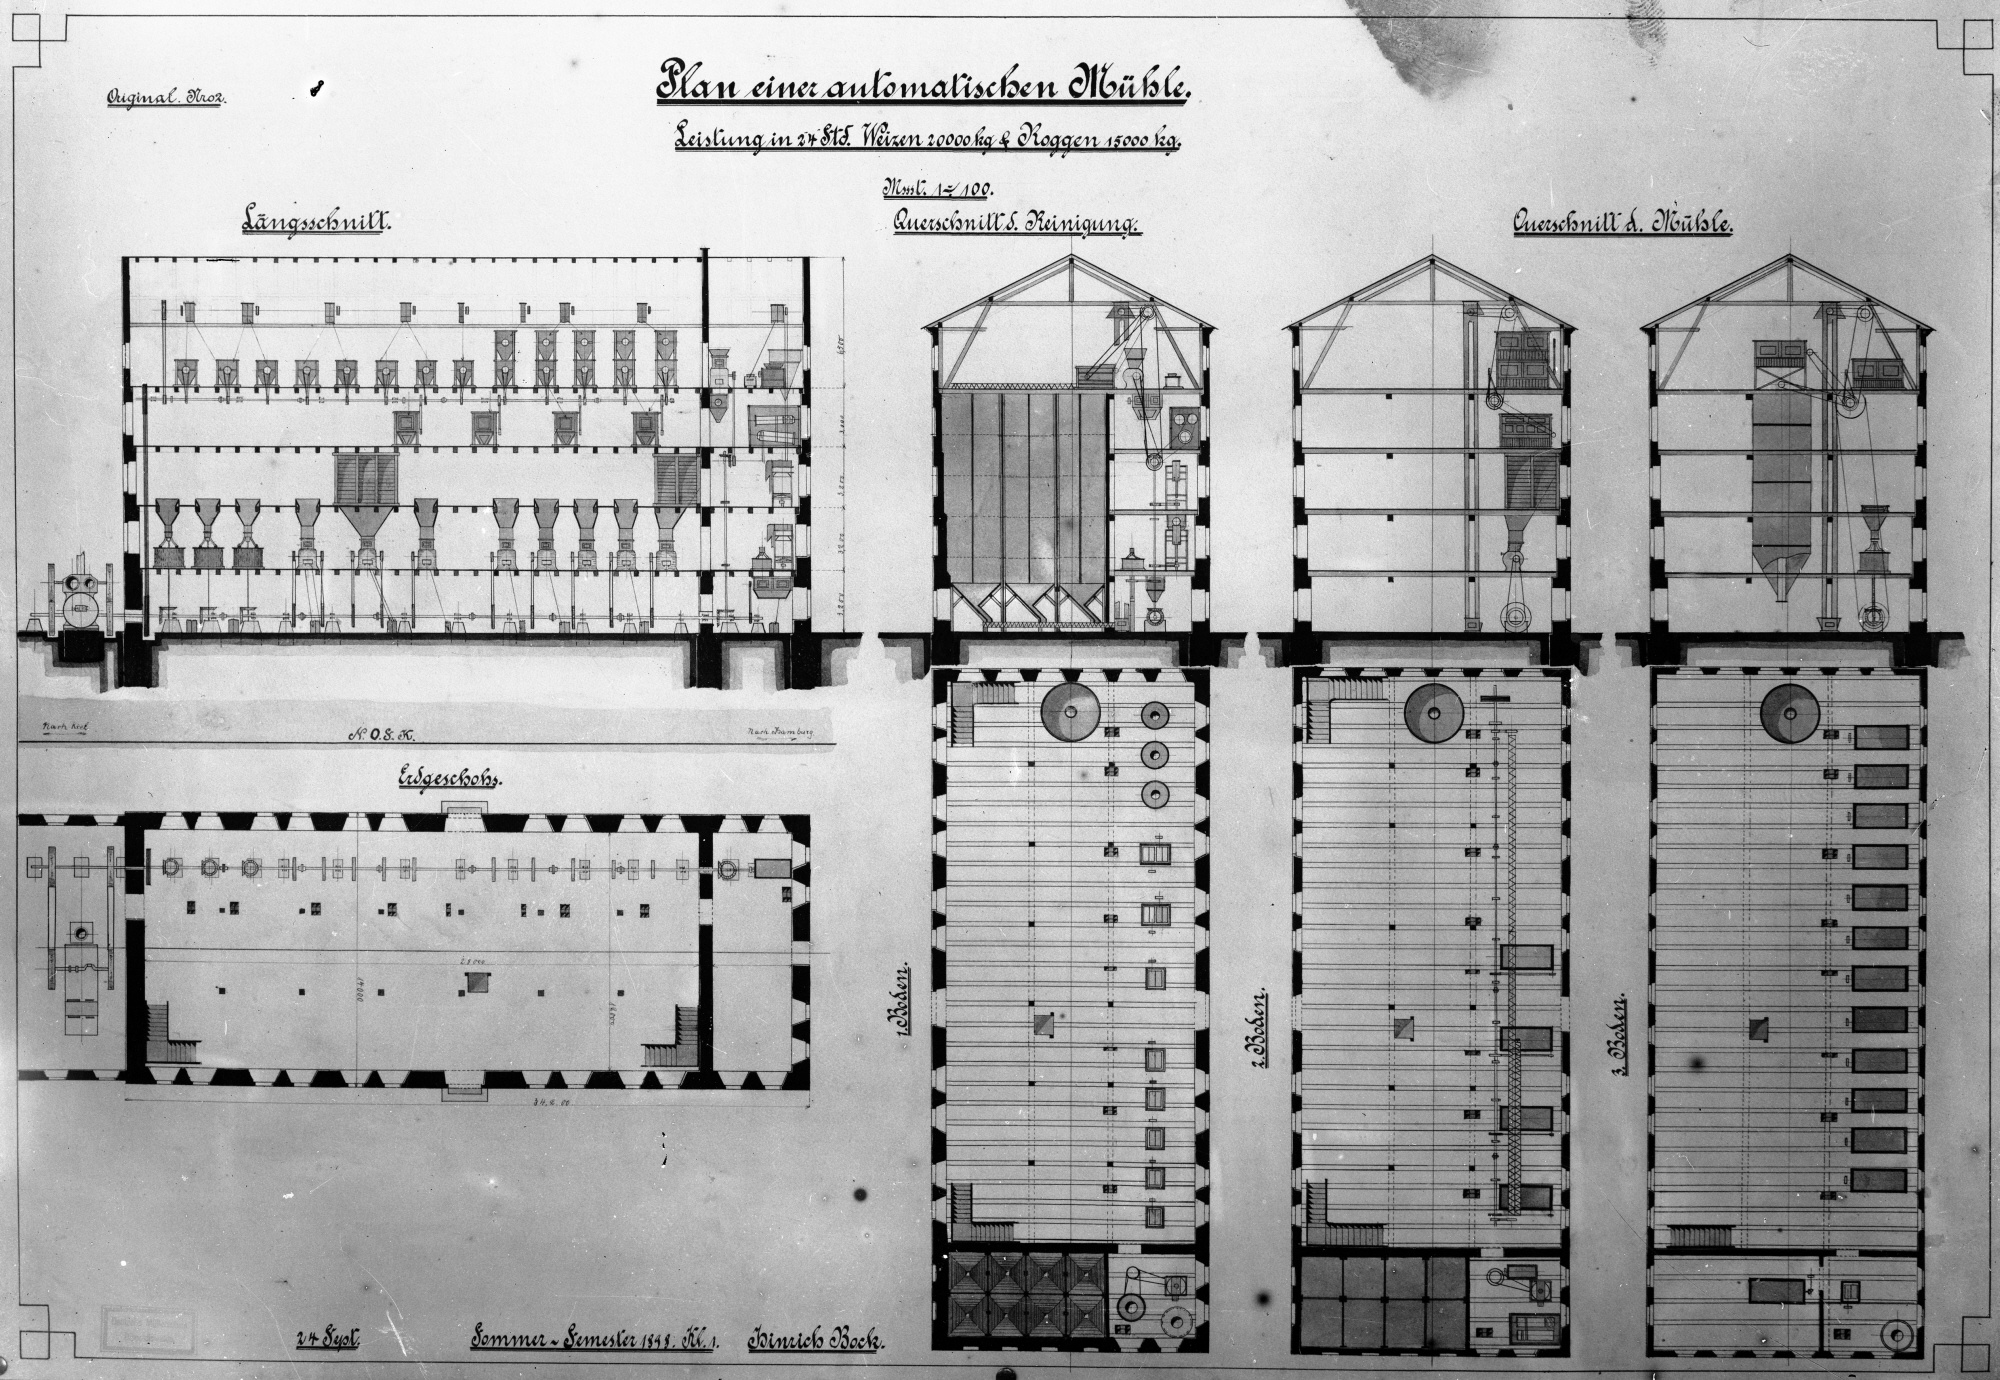 Plan einer automatischen Mühle (Historische Mühle von Sanssouci CC BY-NC-SA)